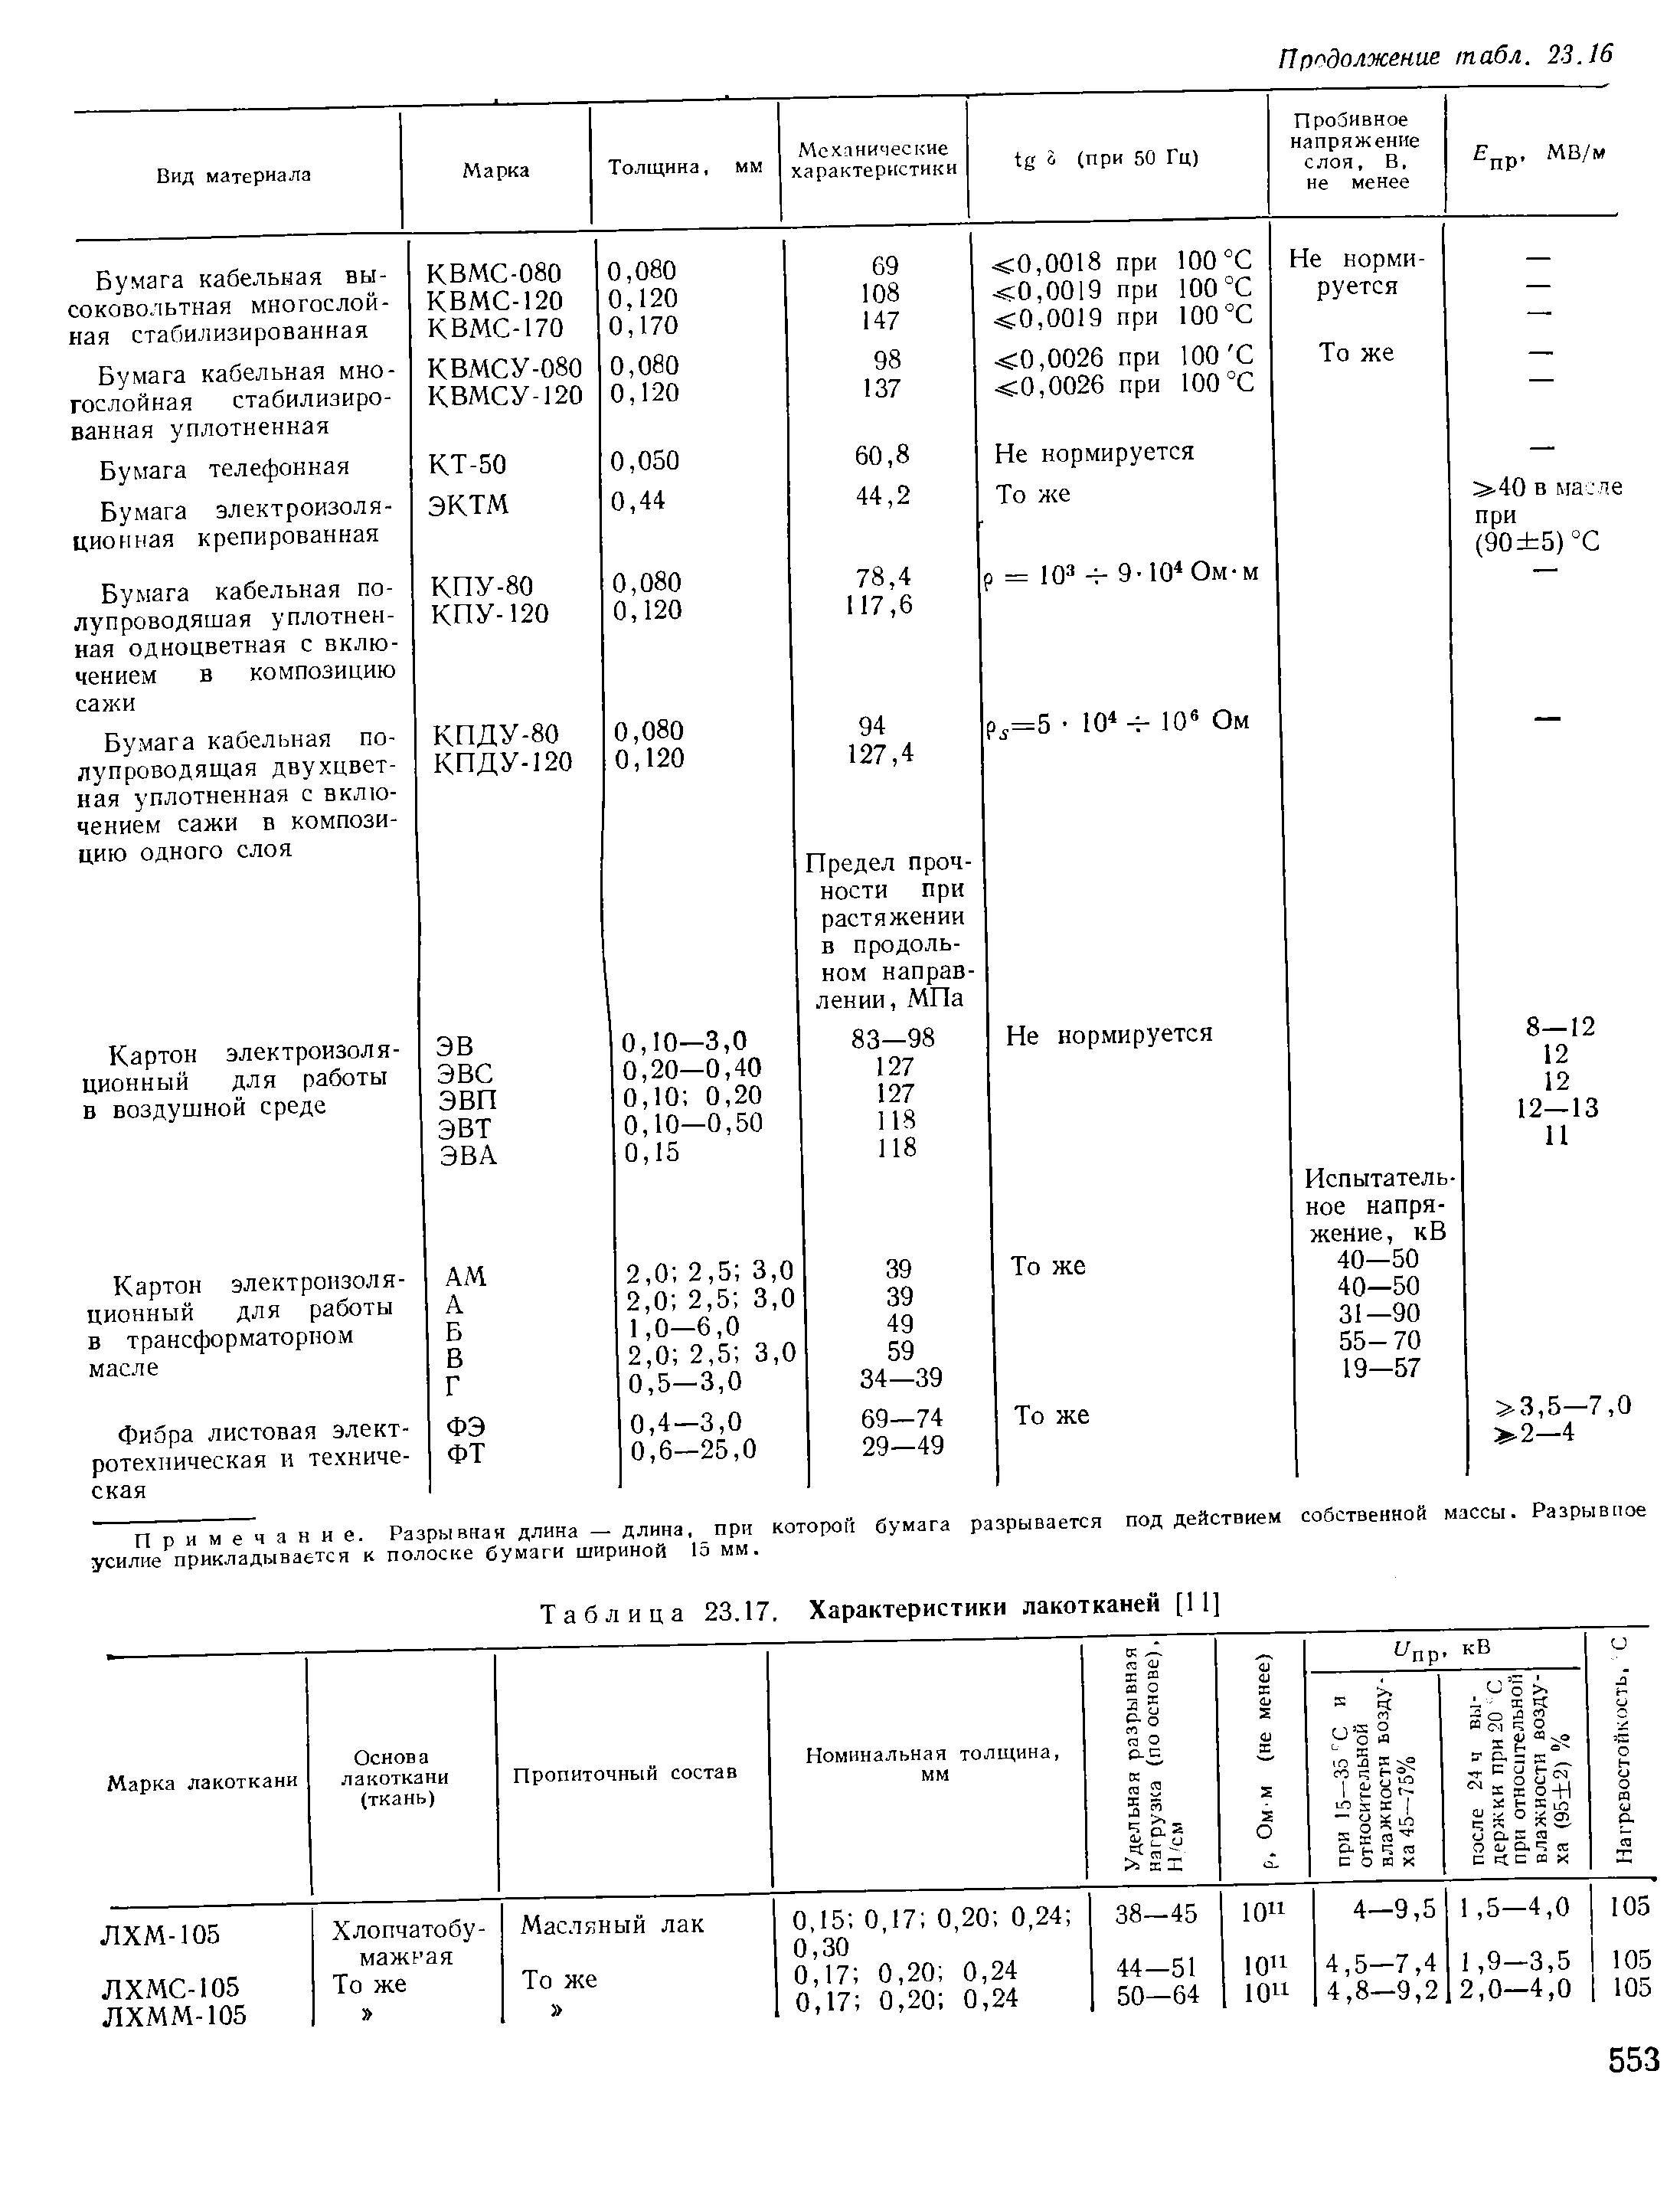 Таблица 23.17. Характеристики лакотканей [11]
